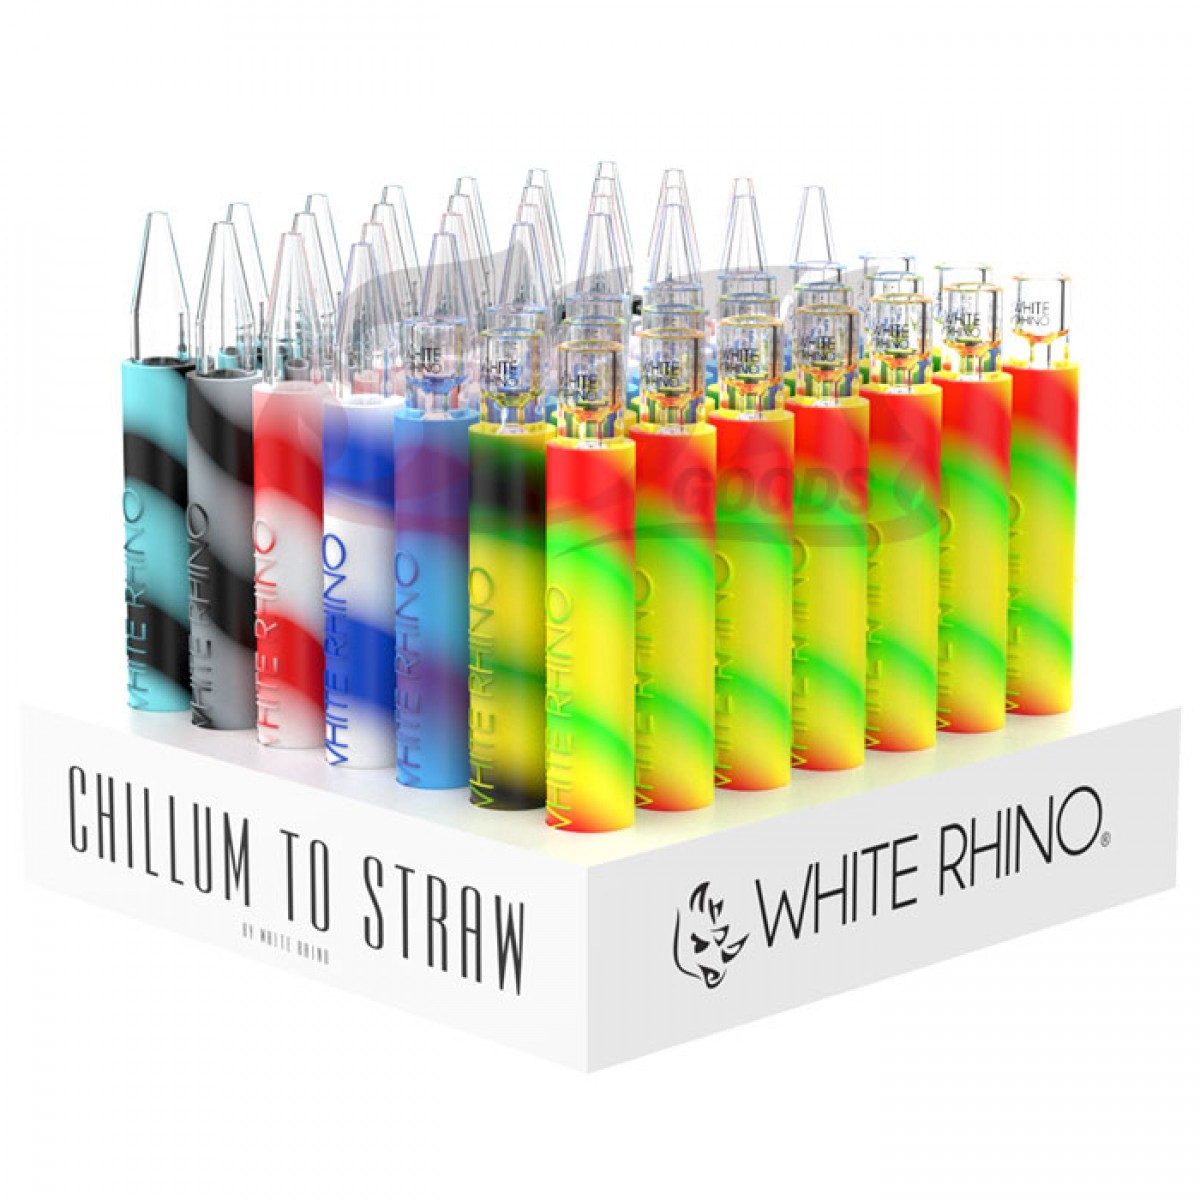 White Rhino Chillum to Straw Kits 49ct